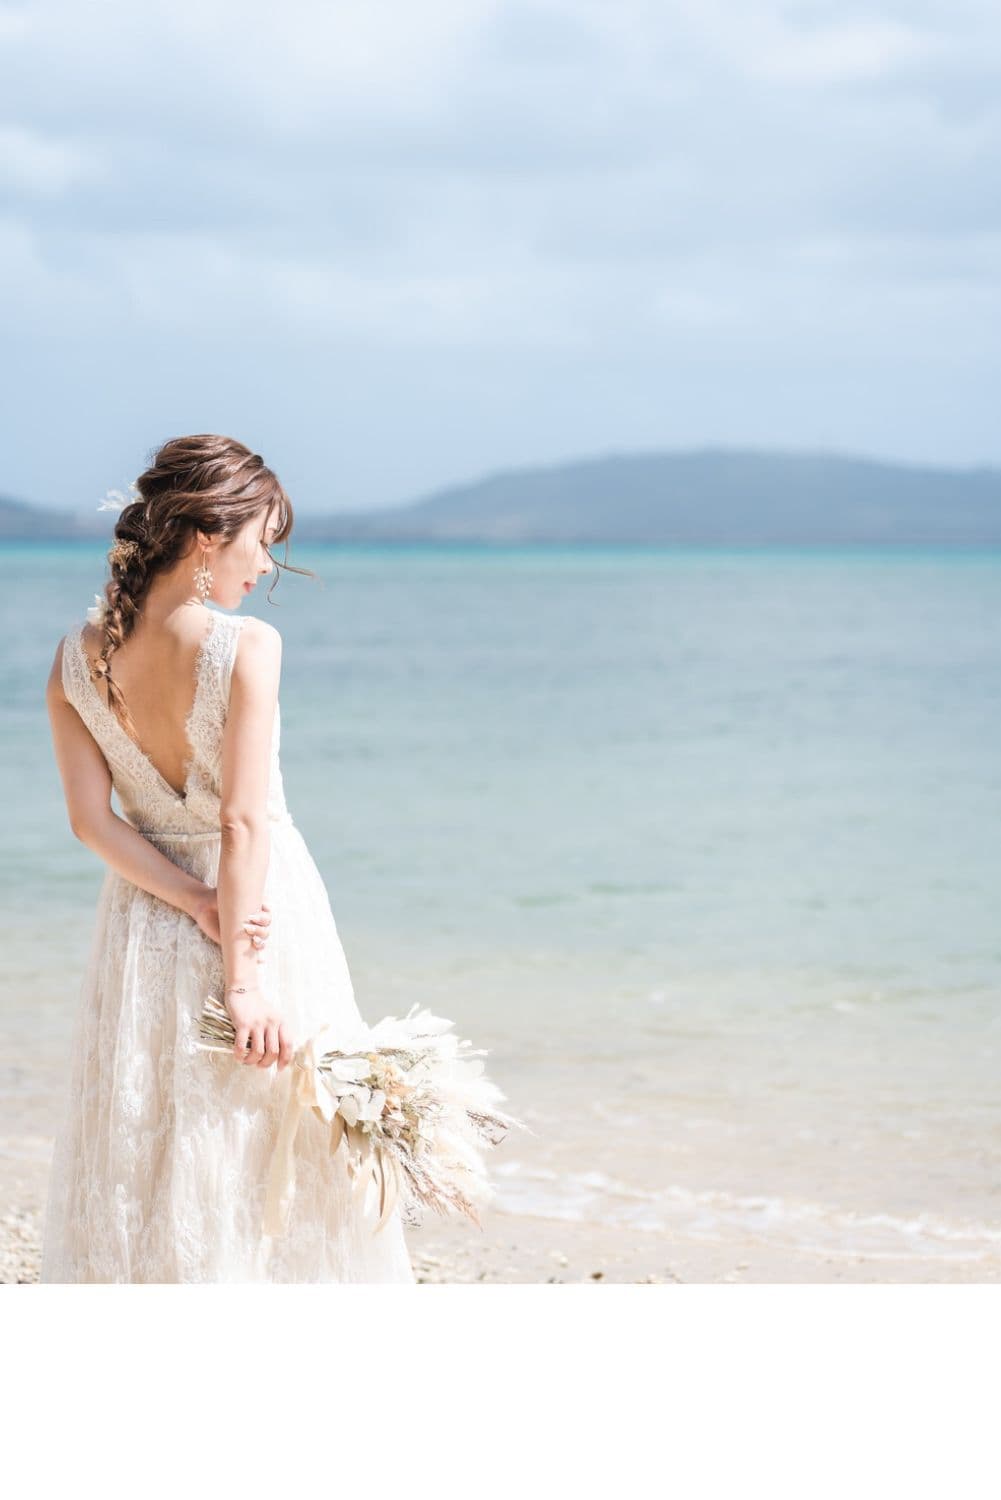 石垣島のビーチで海を眺める新婦の後ろ姿